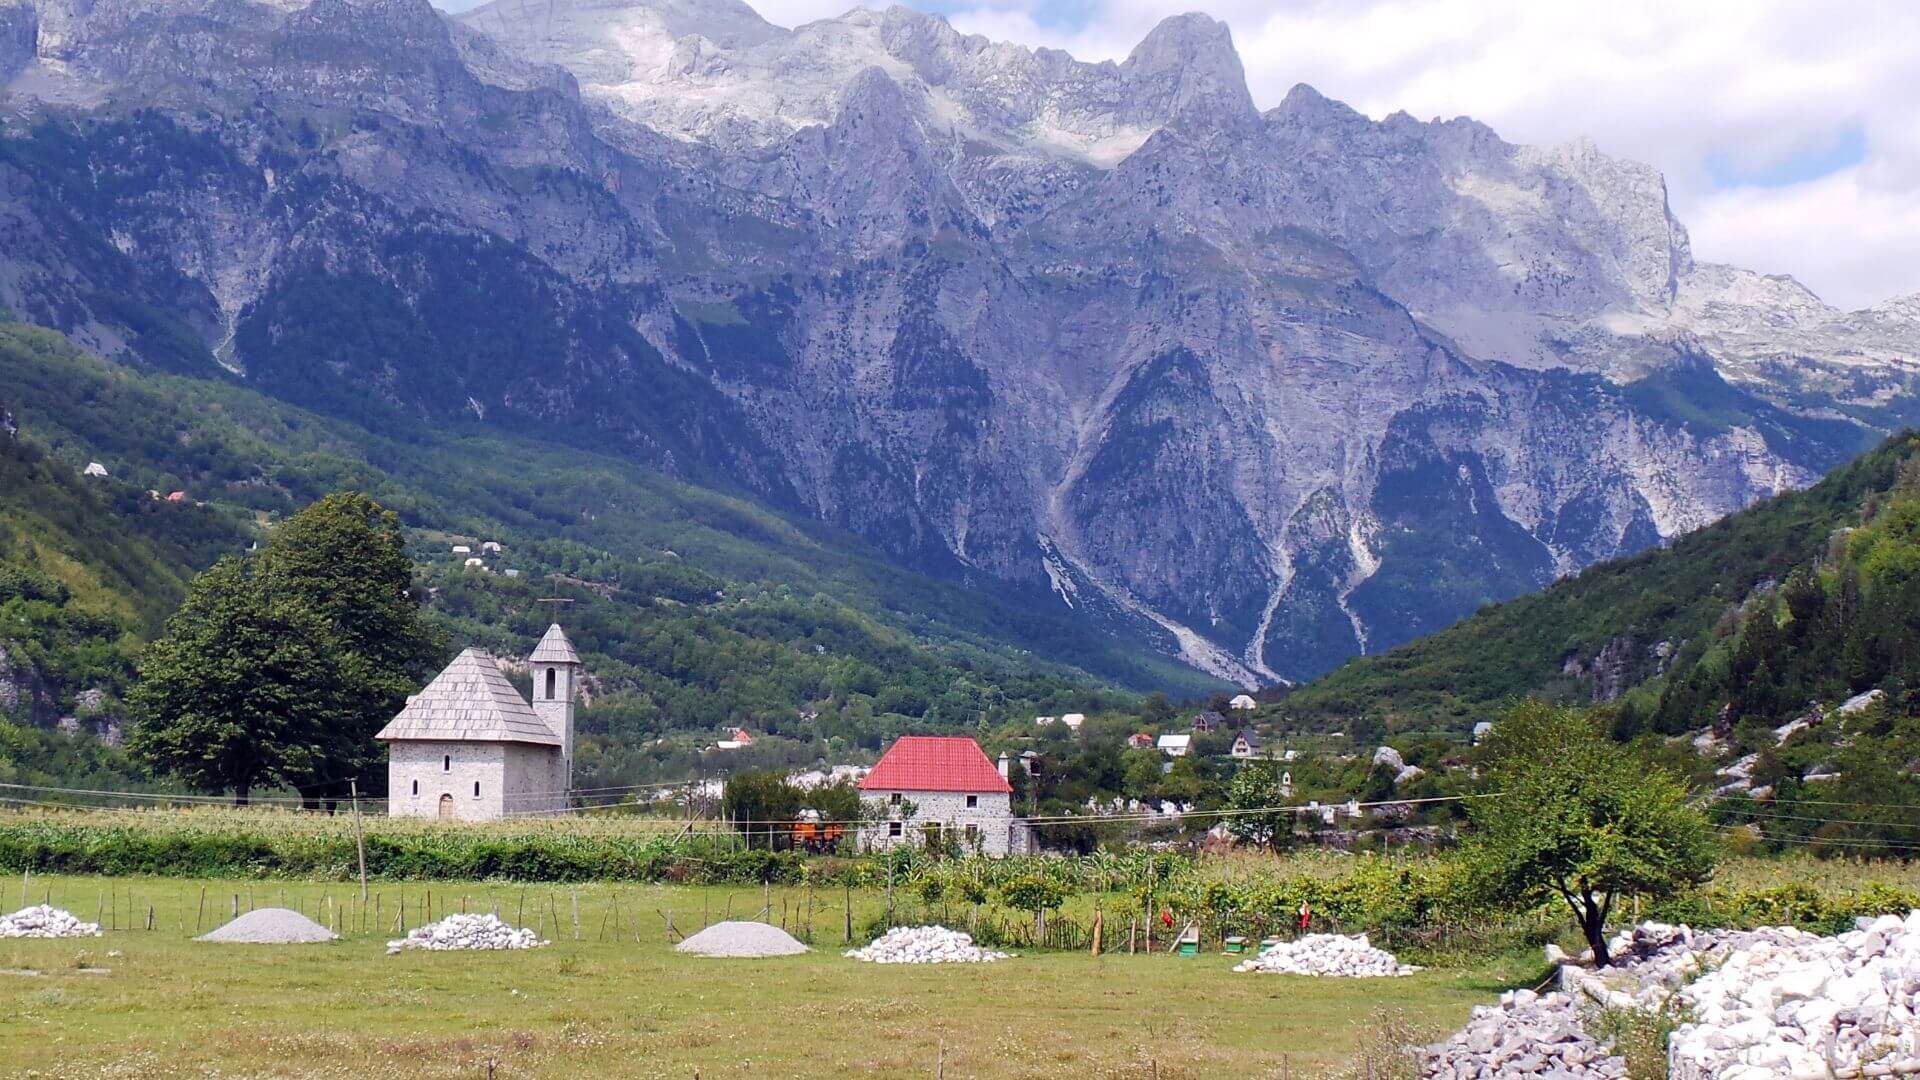 Albanie. JVO Voyages votre agence de voyages en groupe par excellence, organise des excursions et croisières. Vue des montagnes